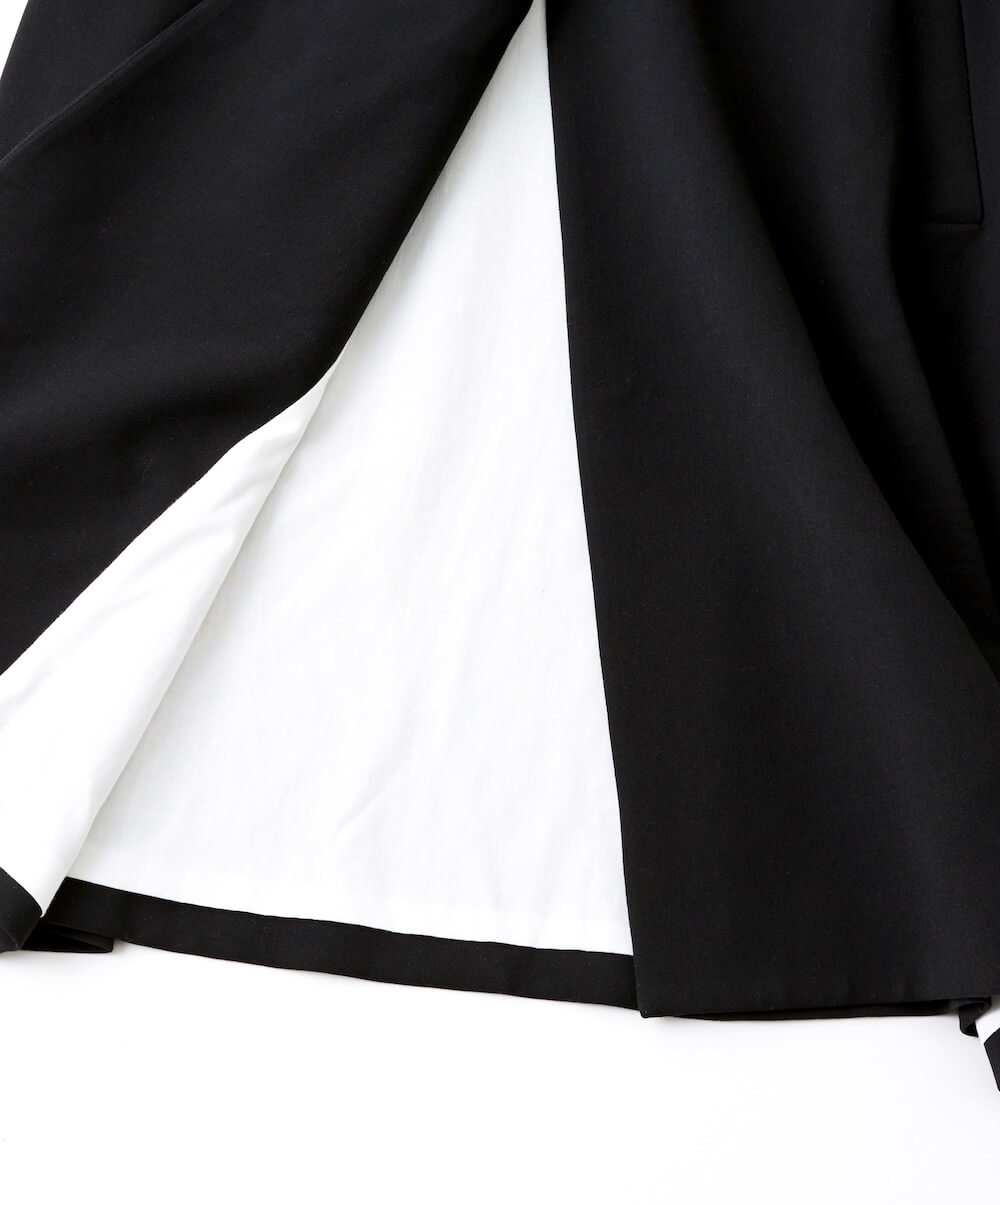 【ENFOLD】ブラックノーカラーコート | ワンタイムレンタル | ファッションレンタル【EDIST. CLOSET】